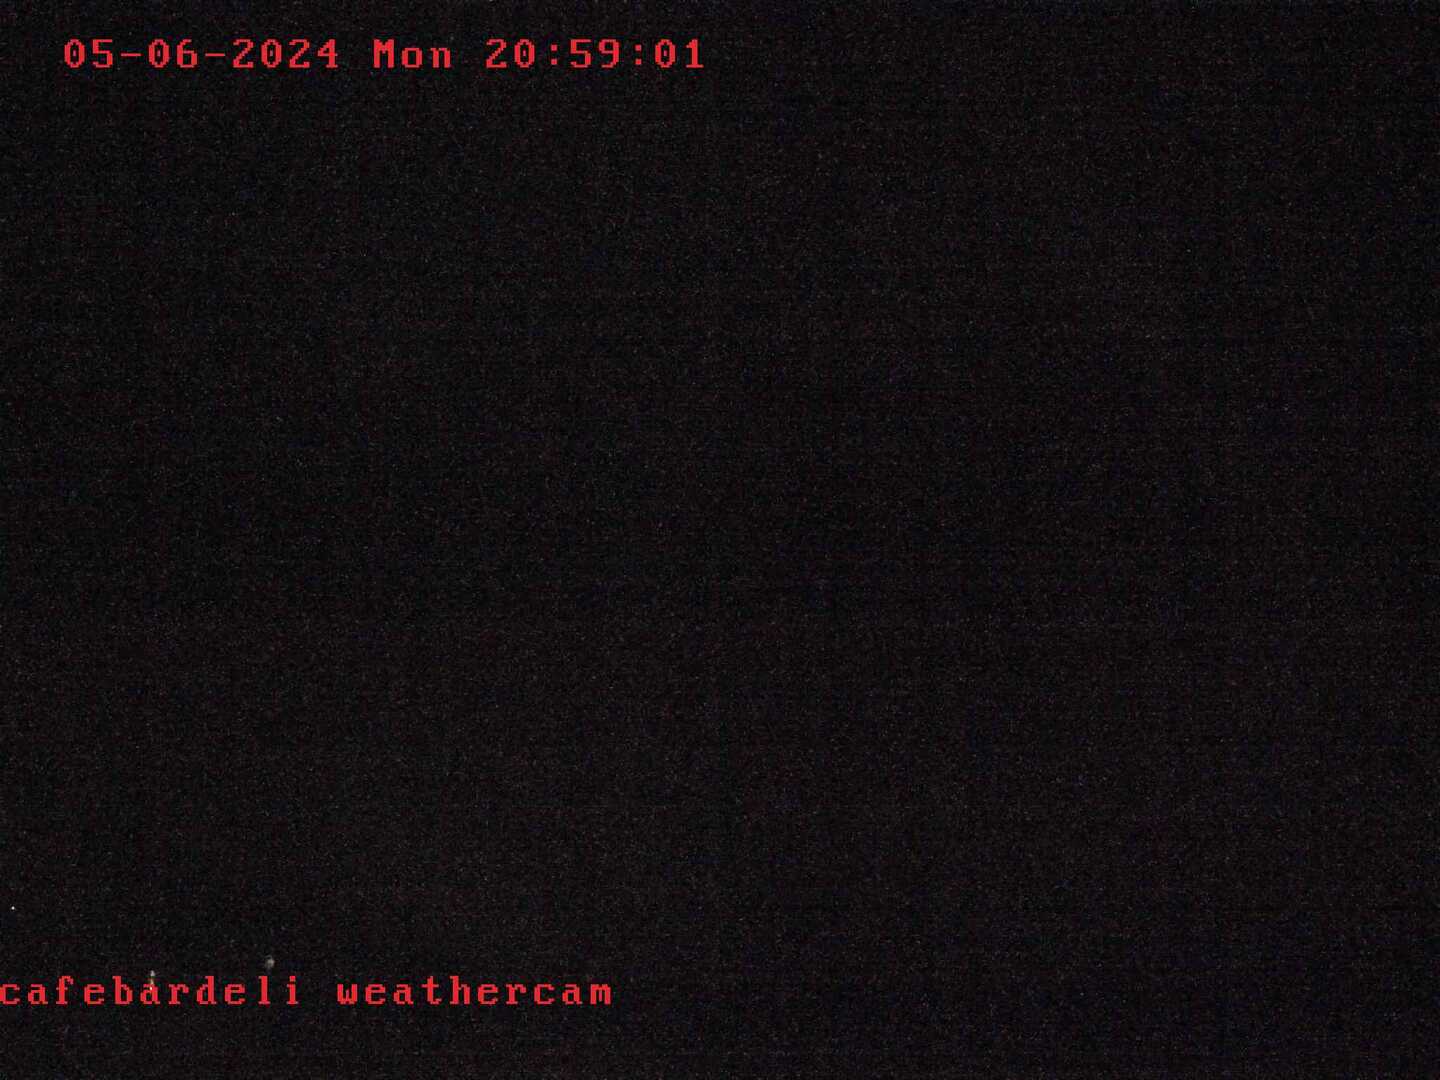 CafeBarDeli Weathercam